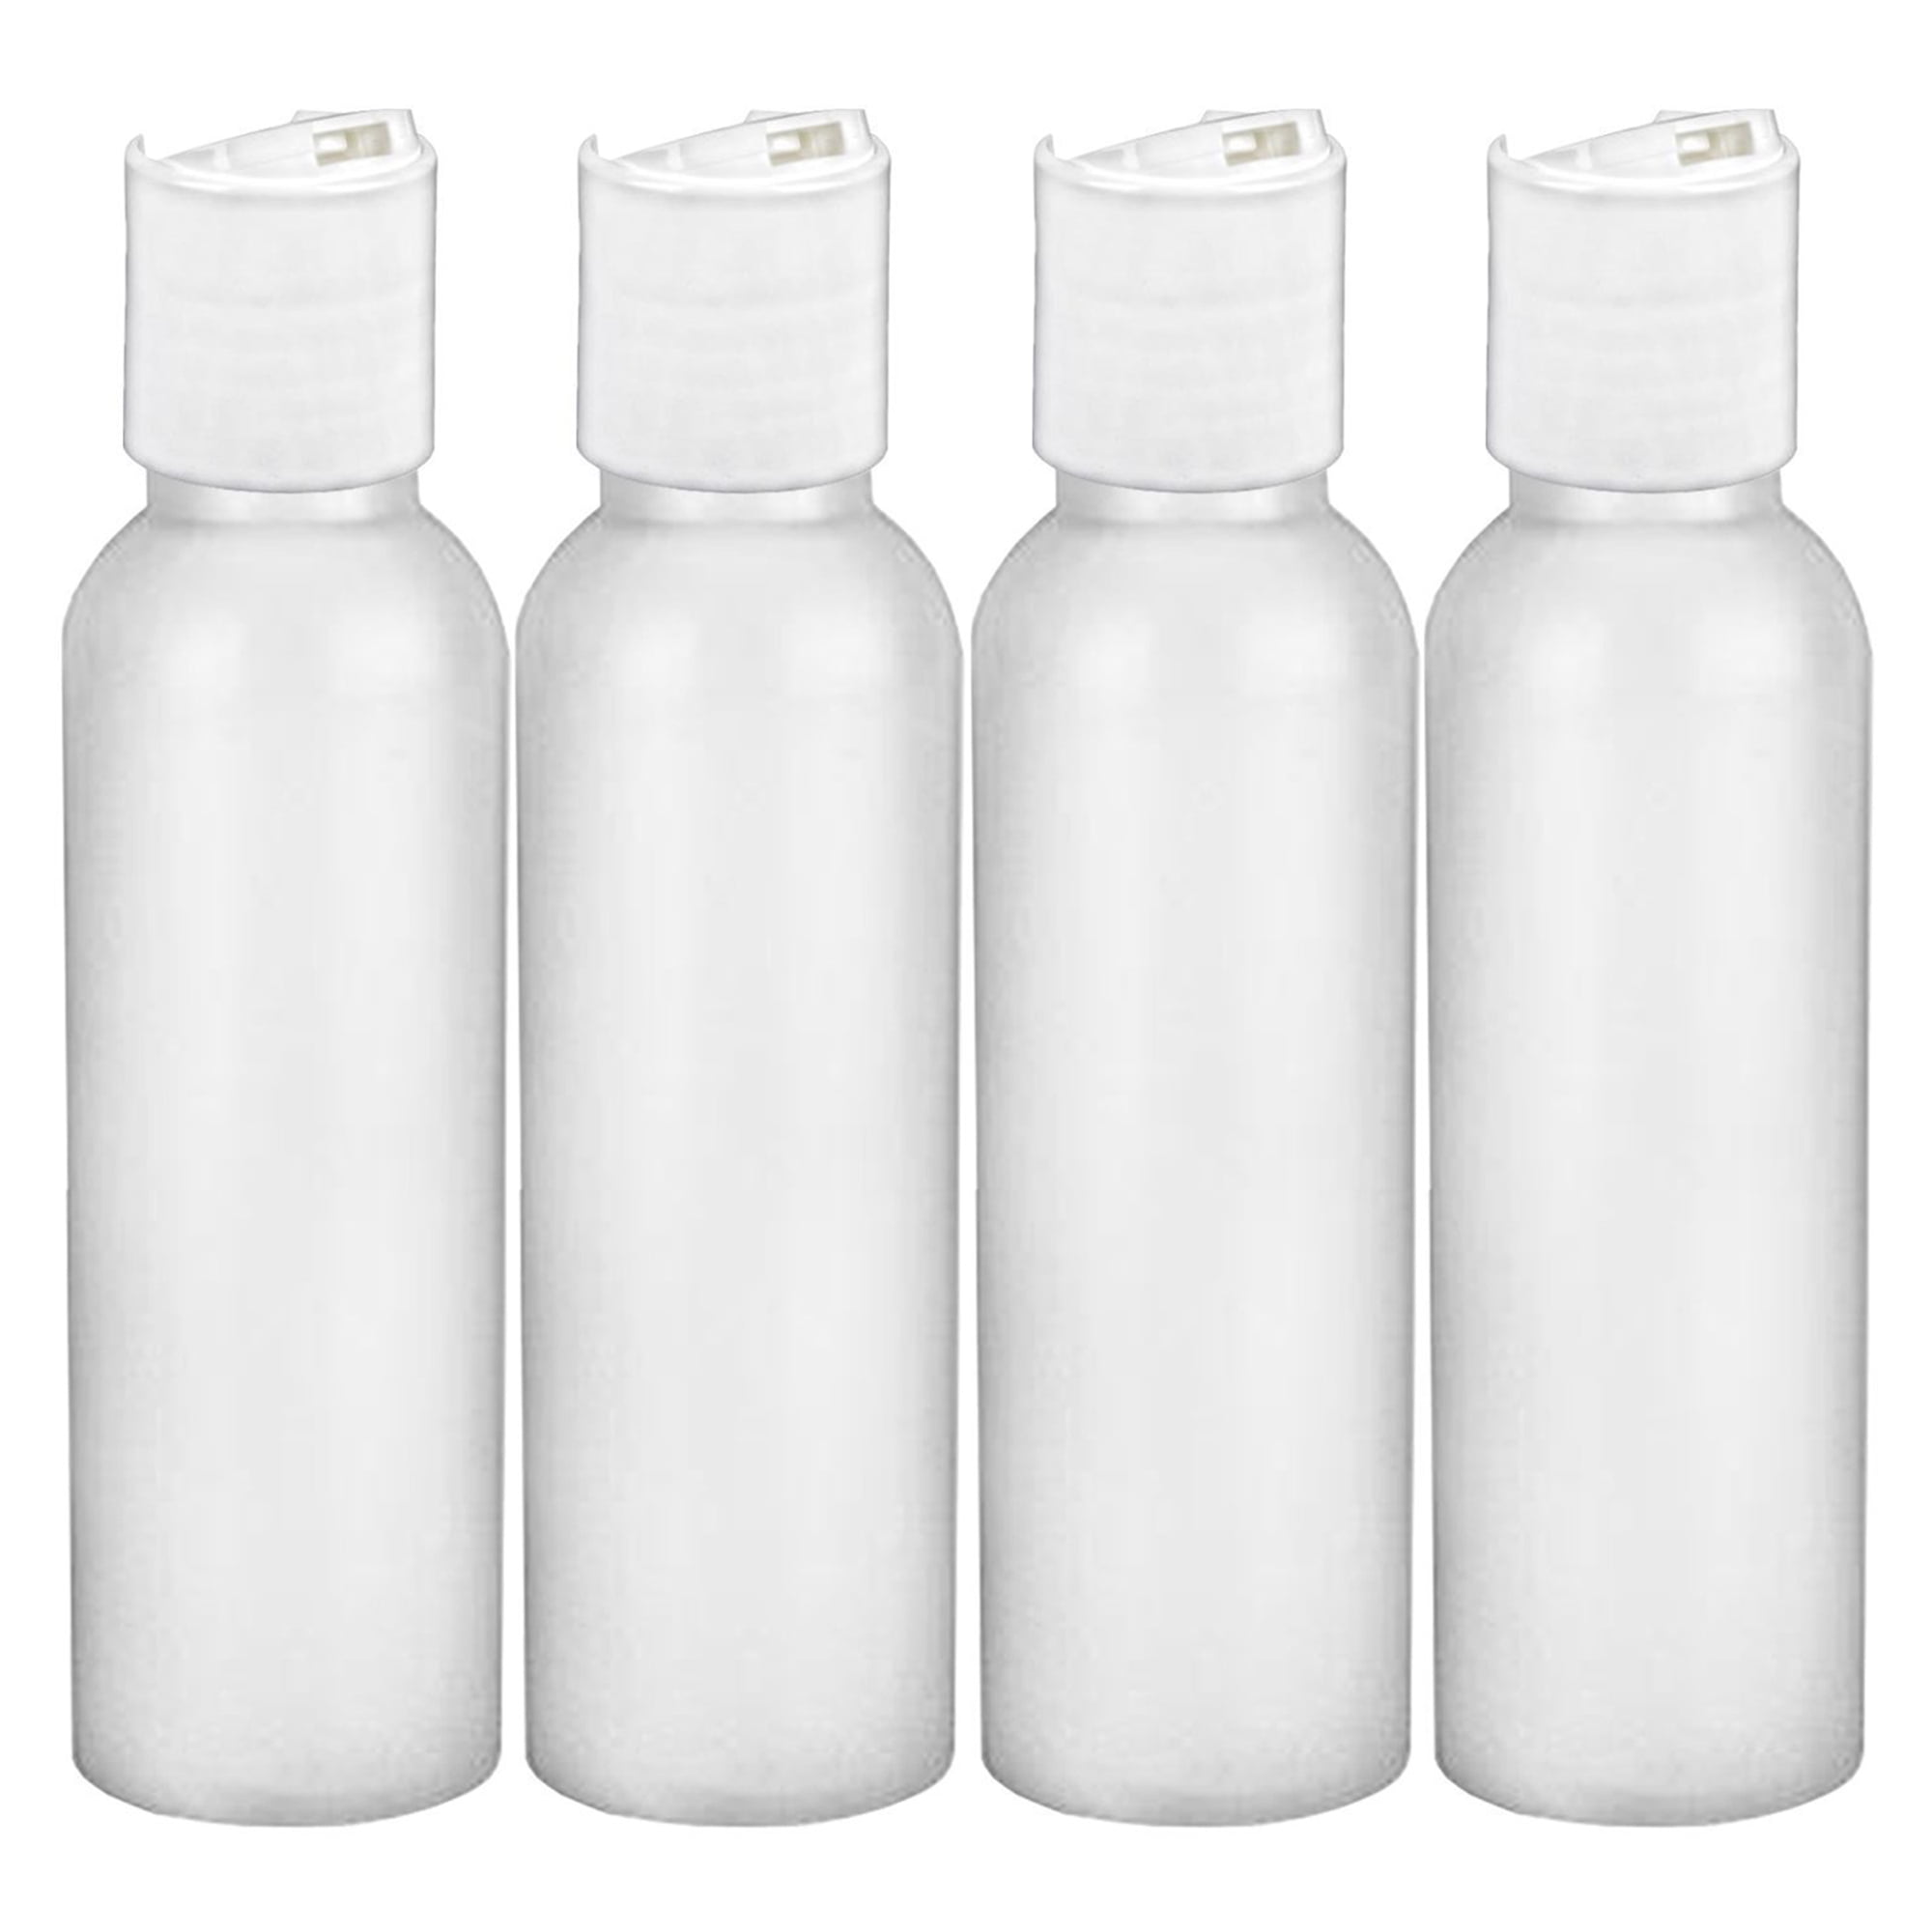 Plastic Spray Bottle,Reusable Empty Small Spray Bottle with Plastic Sprayer 5PC/60ML XVSSAA Travel Bottles